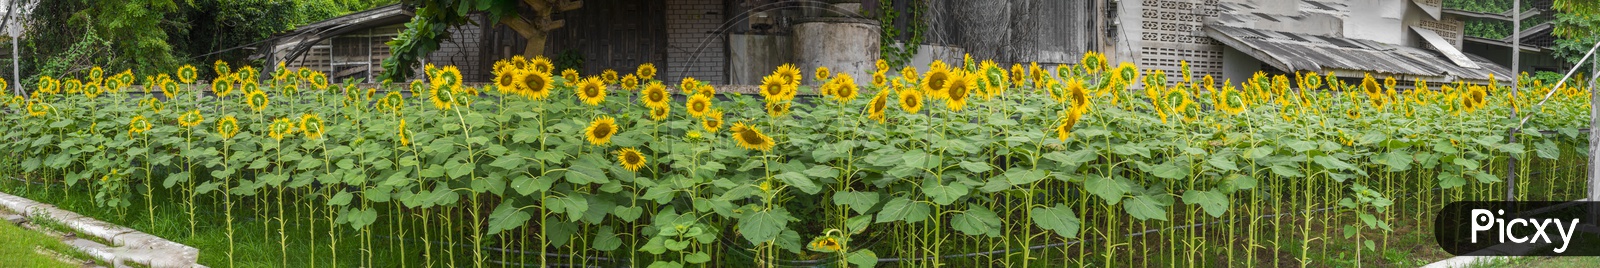 View of sunflowers panorama